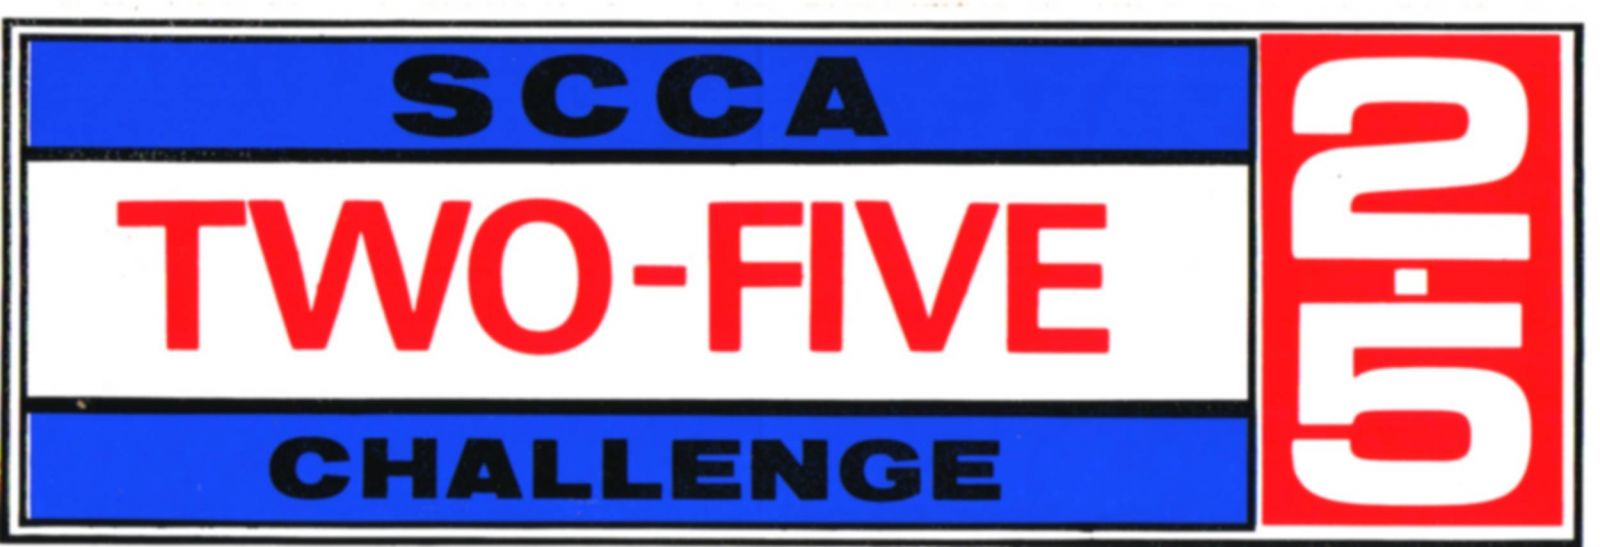 Original SCCA 2.5 Challenge window sticker